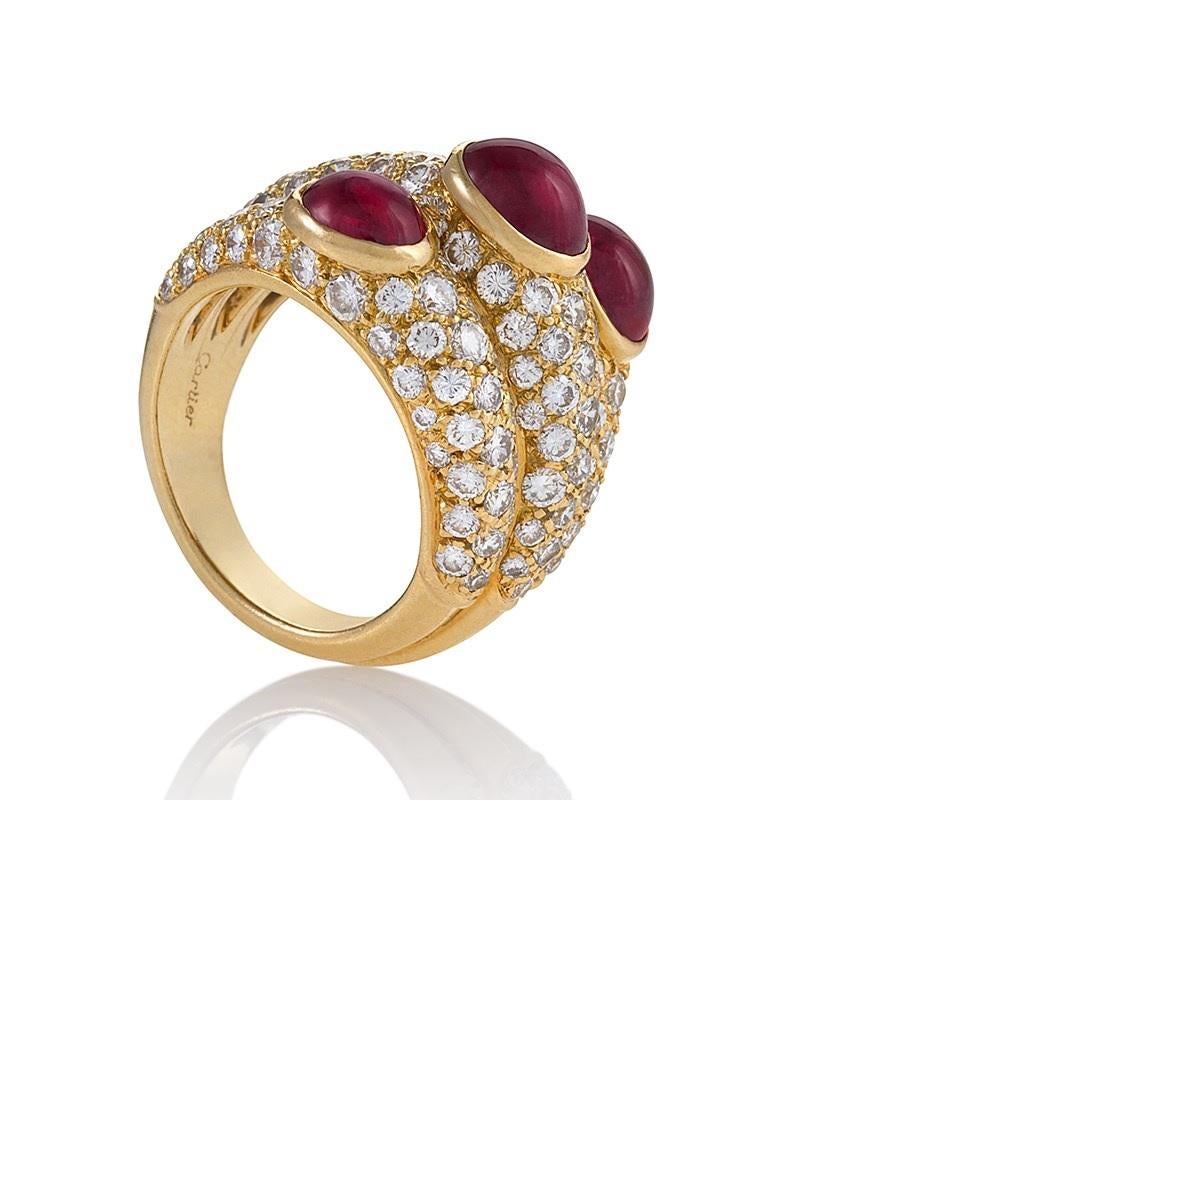 Cette bague glamour à trois anneaux en rubis et diamants présente le style et le savoir-faire incomparables de Cartier. Serti de diamants pavés étincelants, le triplet de rubis cabochons d'une superbe couleur forme une ligne diagonale à travers